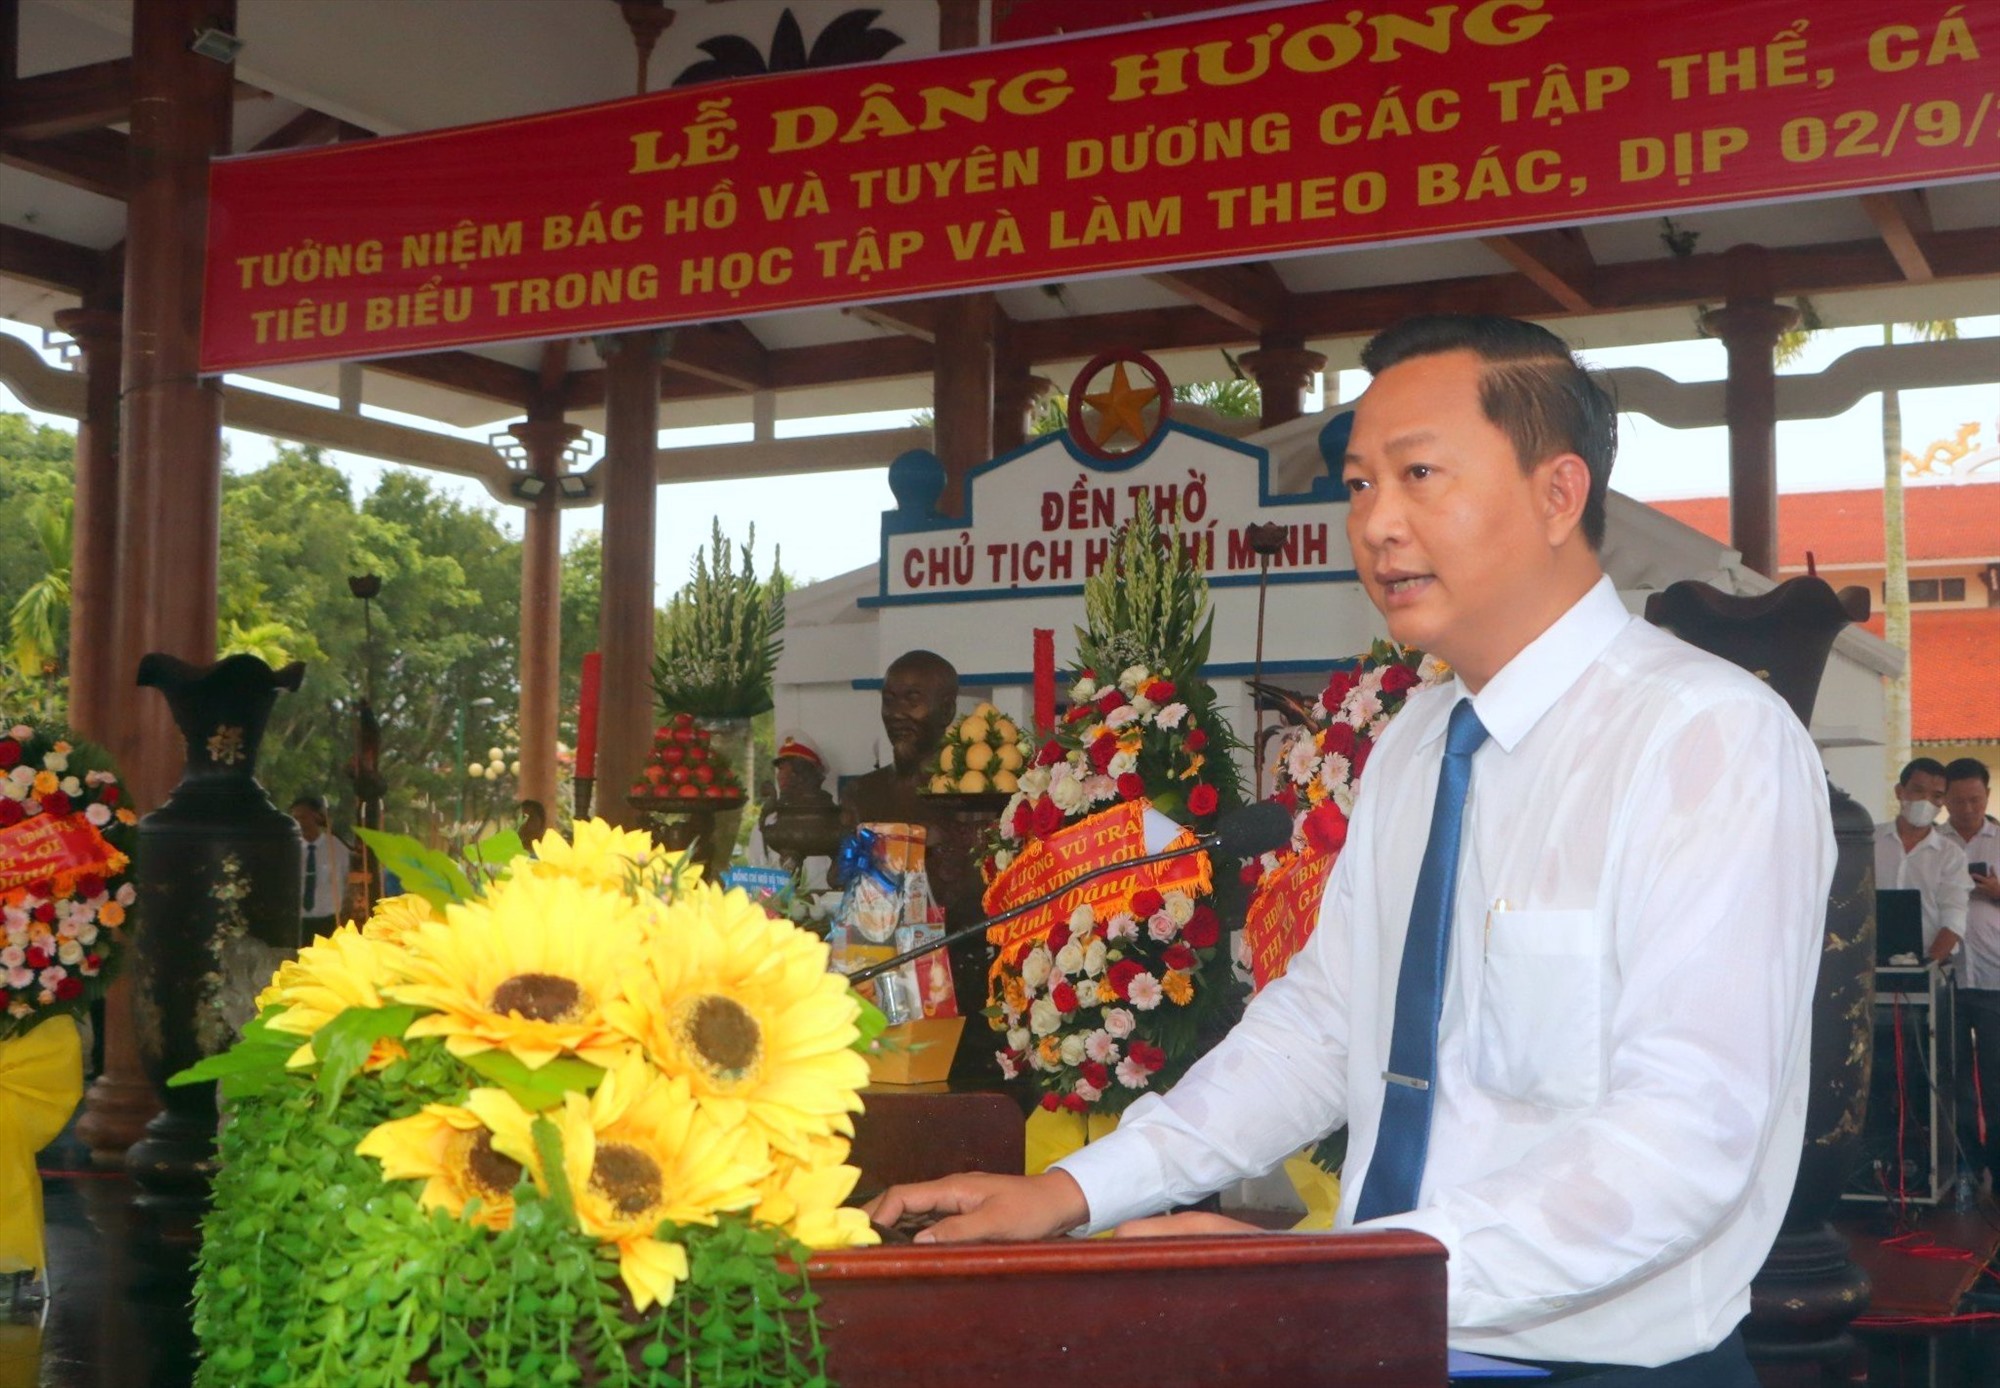 Ông Trương Thanh Nhã, Bí thư Huyện ủy Vĩnh Lợi, tỉnh Bạc Liêu phát biểu tại buổi lễ. Ảnh: Nhật Hồ